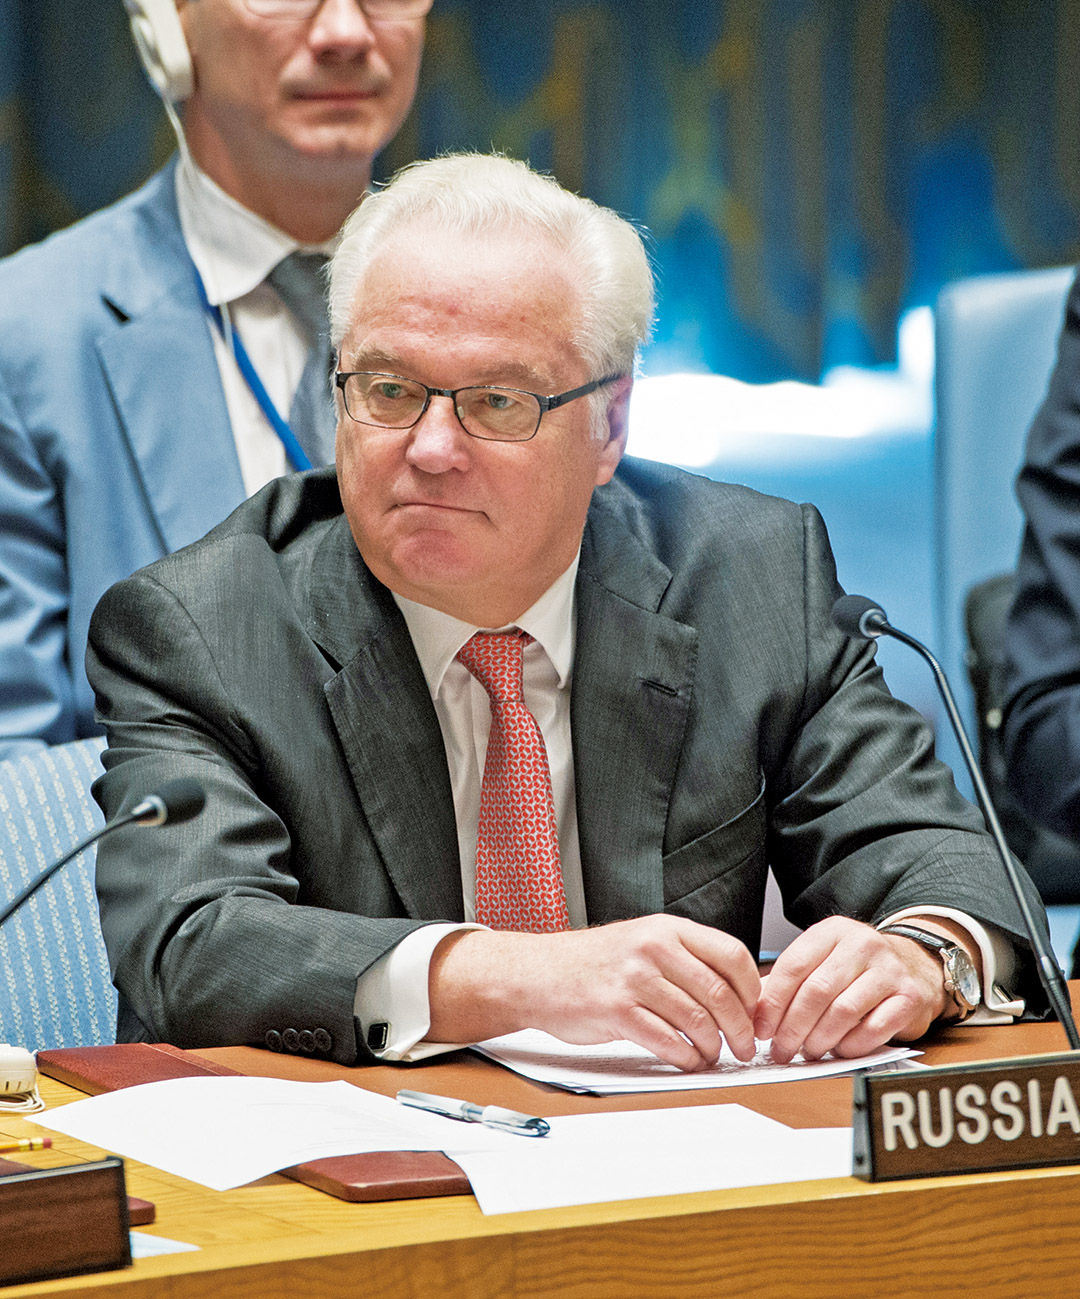 聯合國促俄出面調停